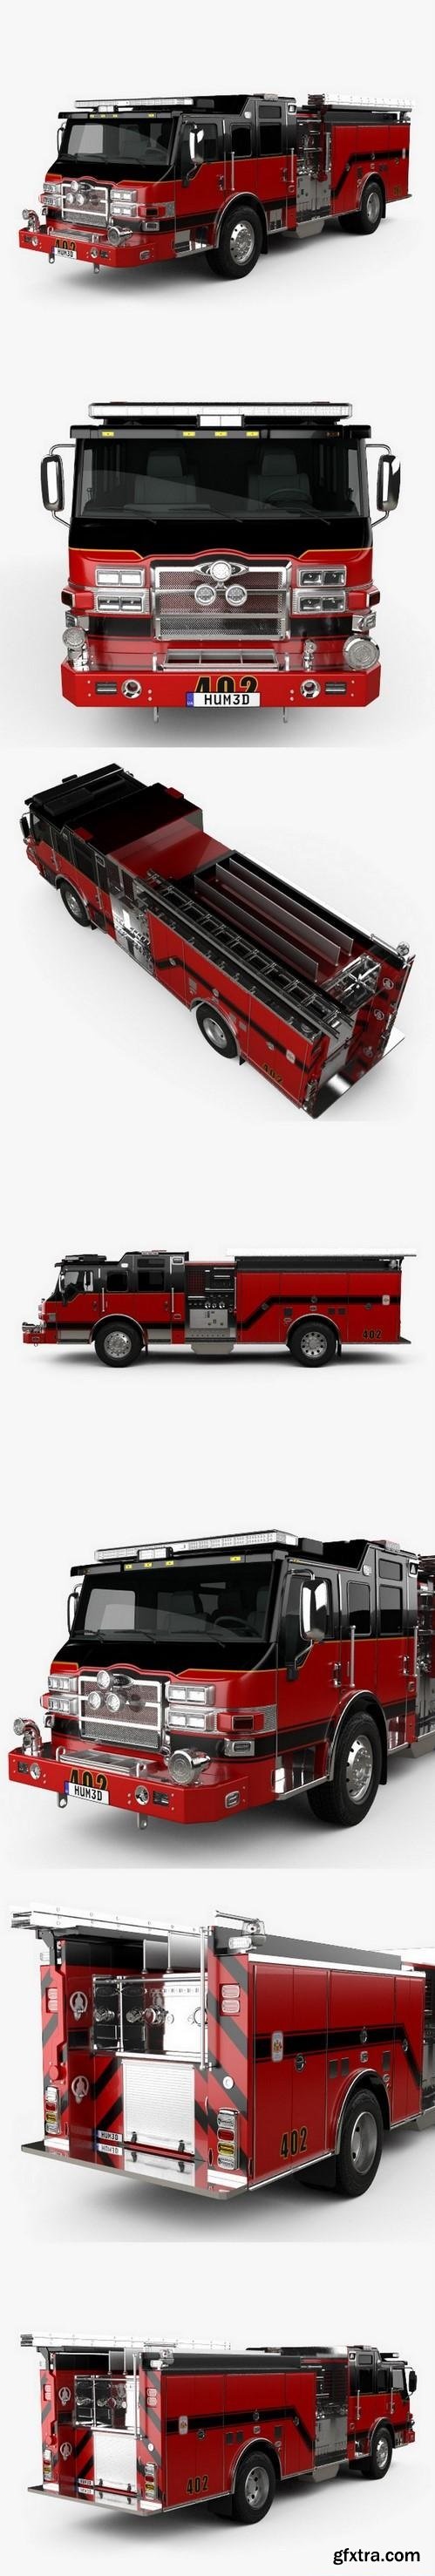 Pierce E402 Pumper Fire Truck 2014 3D model